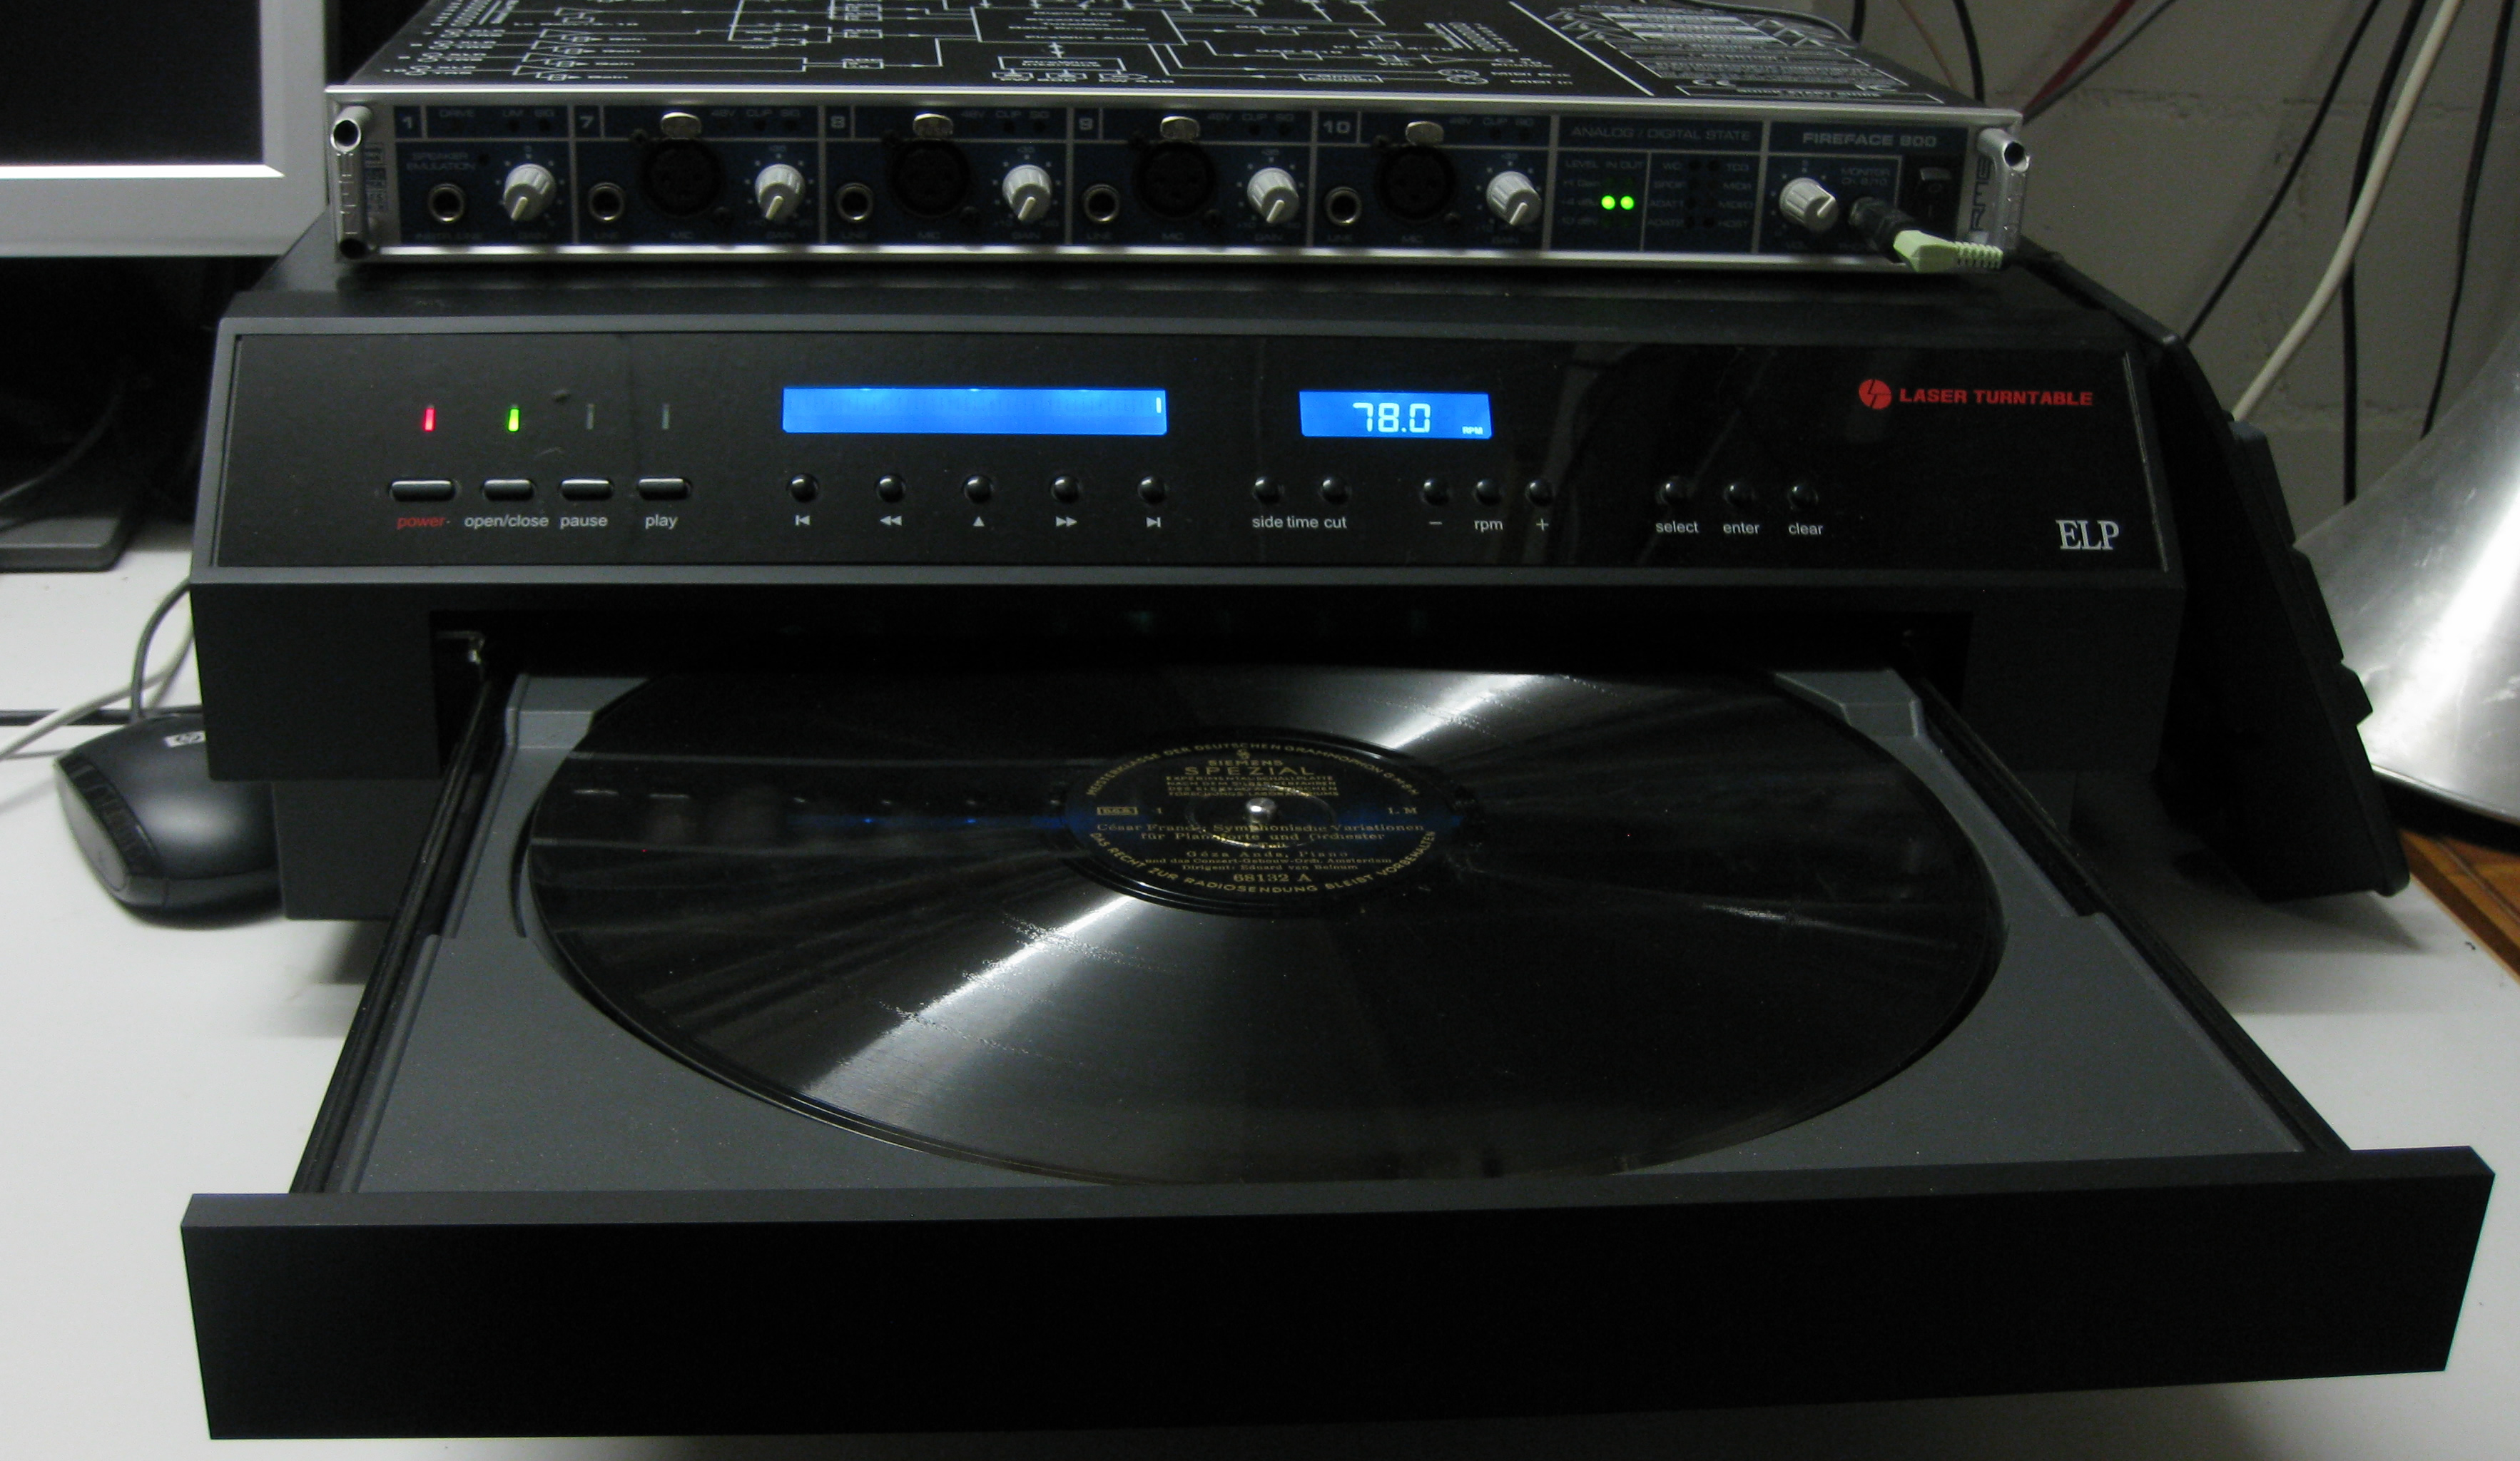 ELP-Laserplattenspieler (LT-2XA) und RME Fireface 800